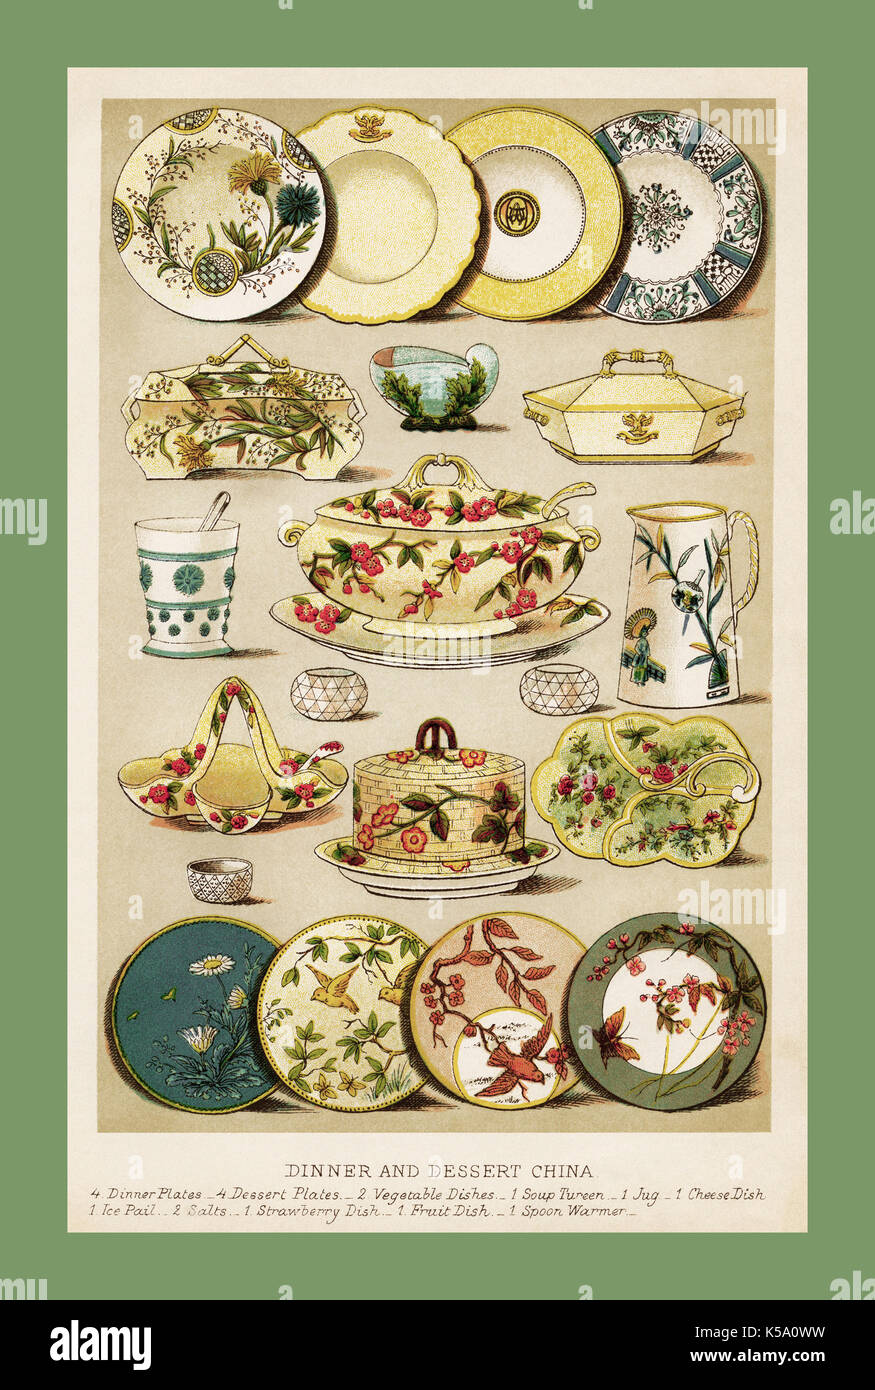 Der 1800er Jahrgang illustration Mrs Beeton's Household Management traditionelles Abendessen und Dessert China Seite Farbe Stockfoto